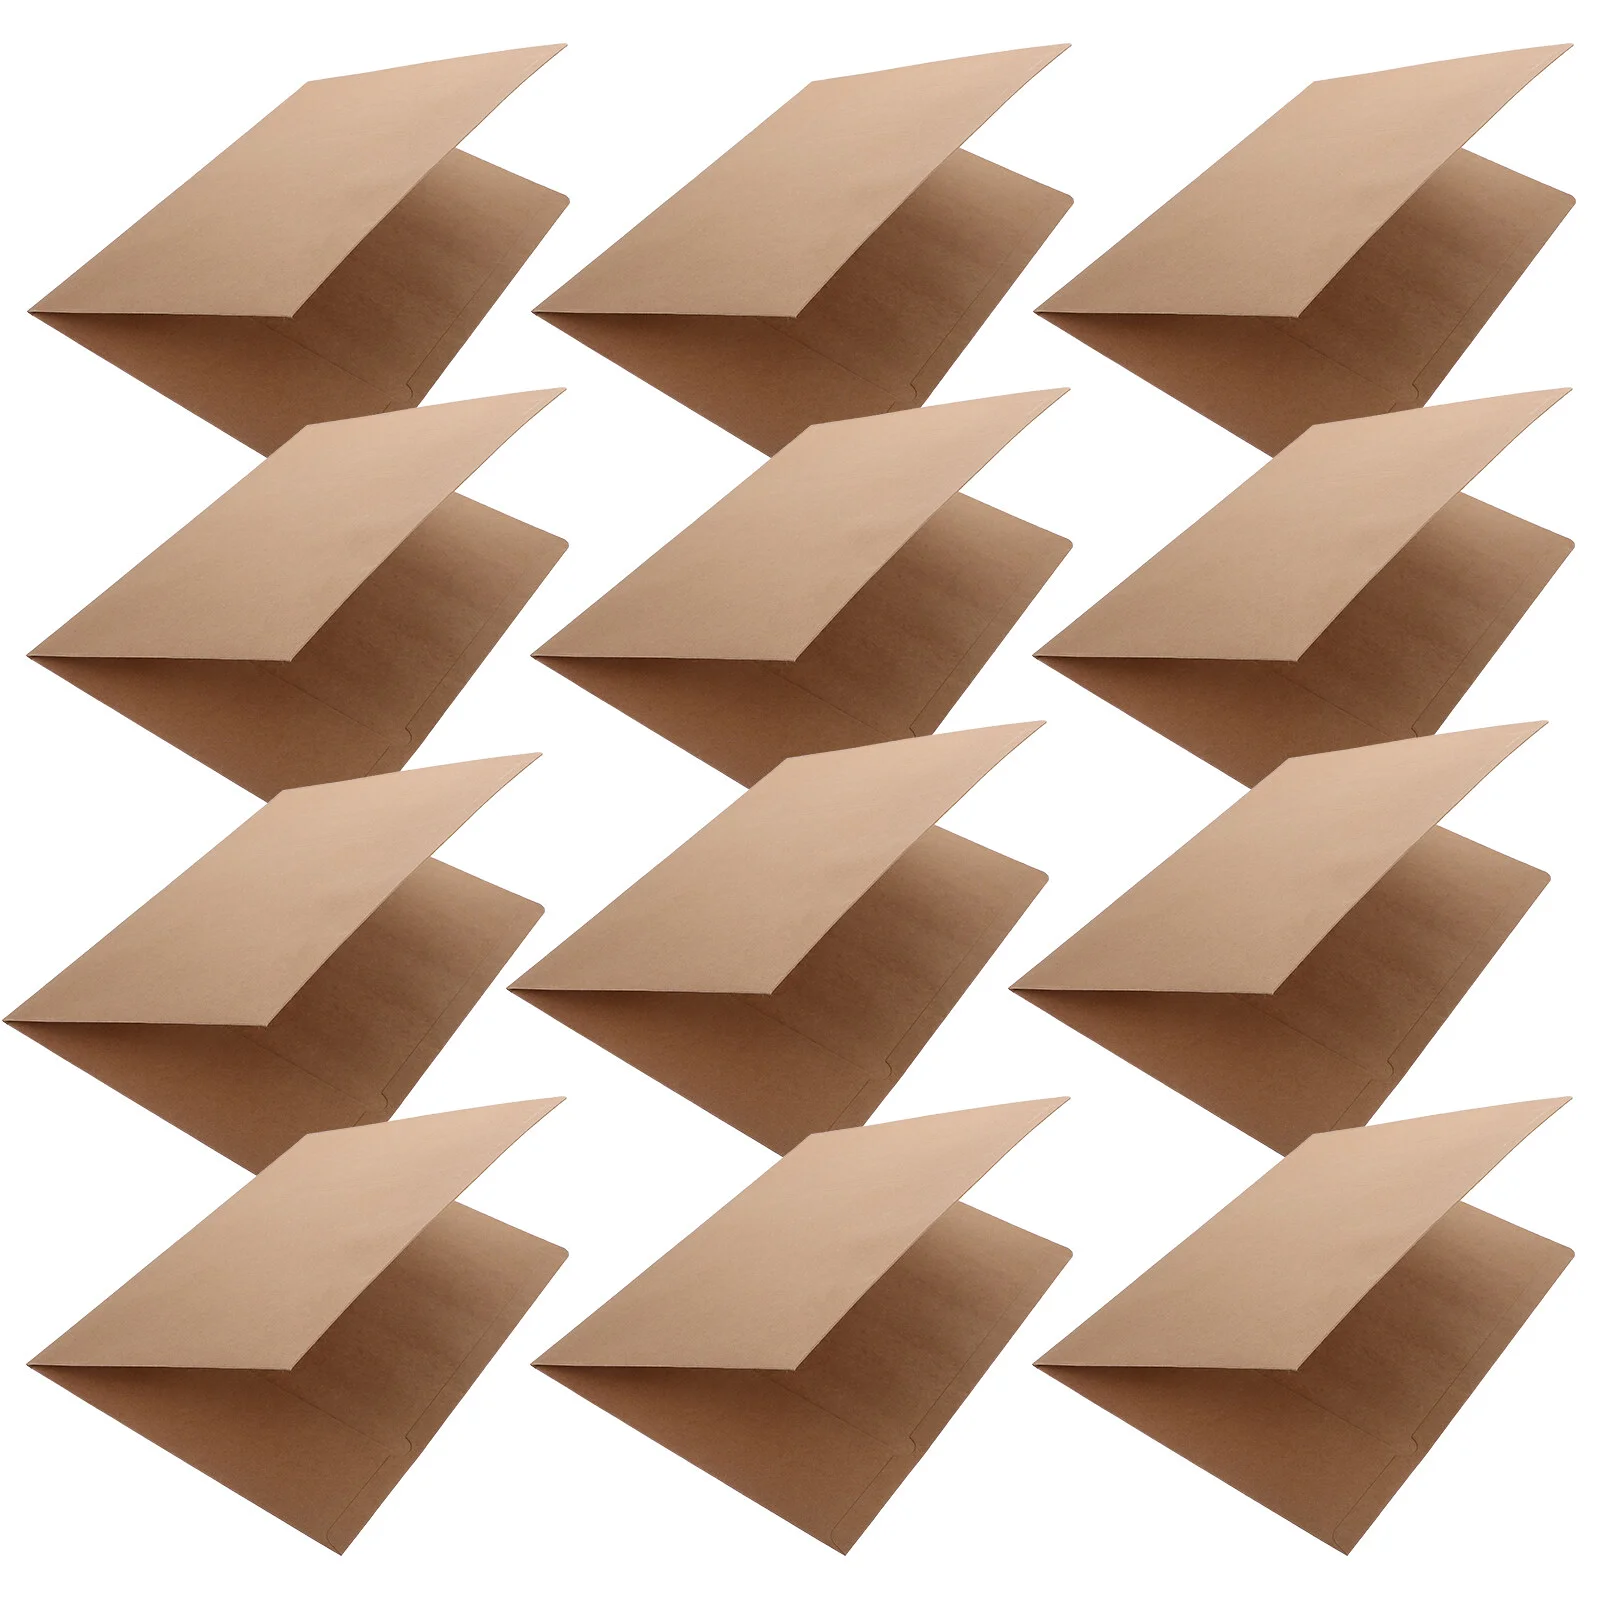 

15 Pcs Book Binding Paper Folder Cardboard Document Folders Papers Kraft File Office Heavy Duty